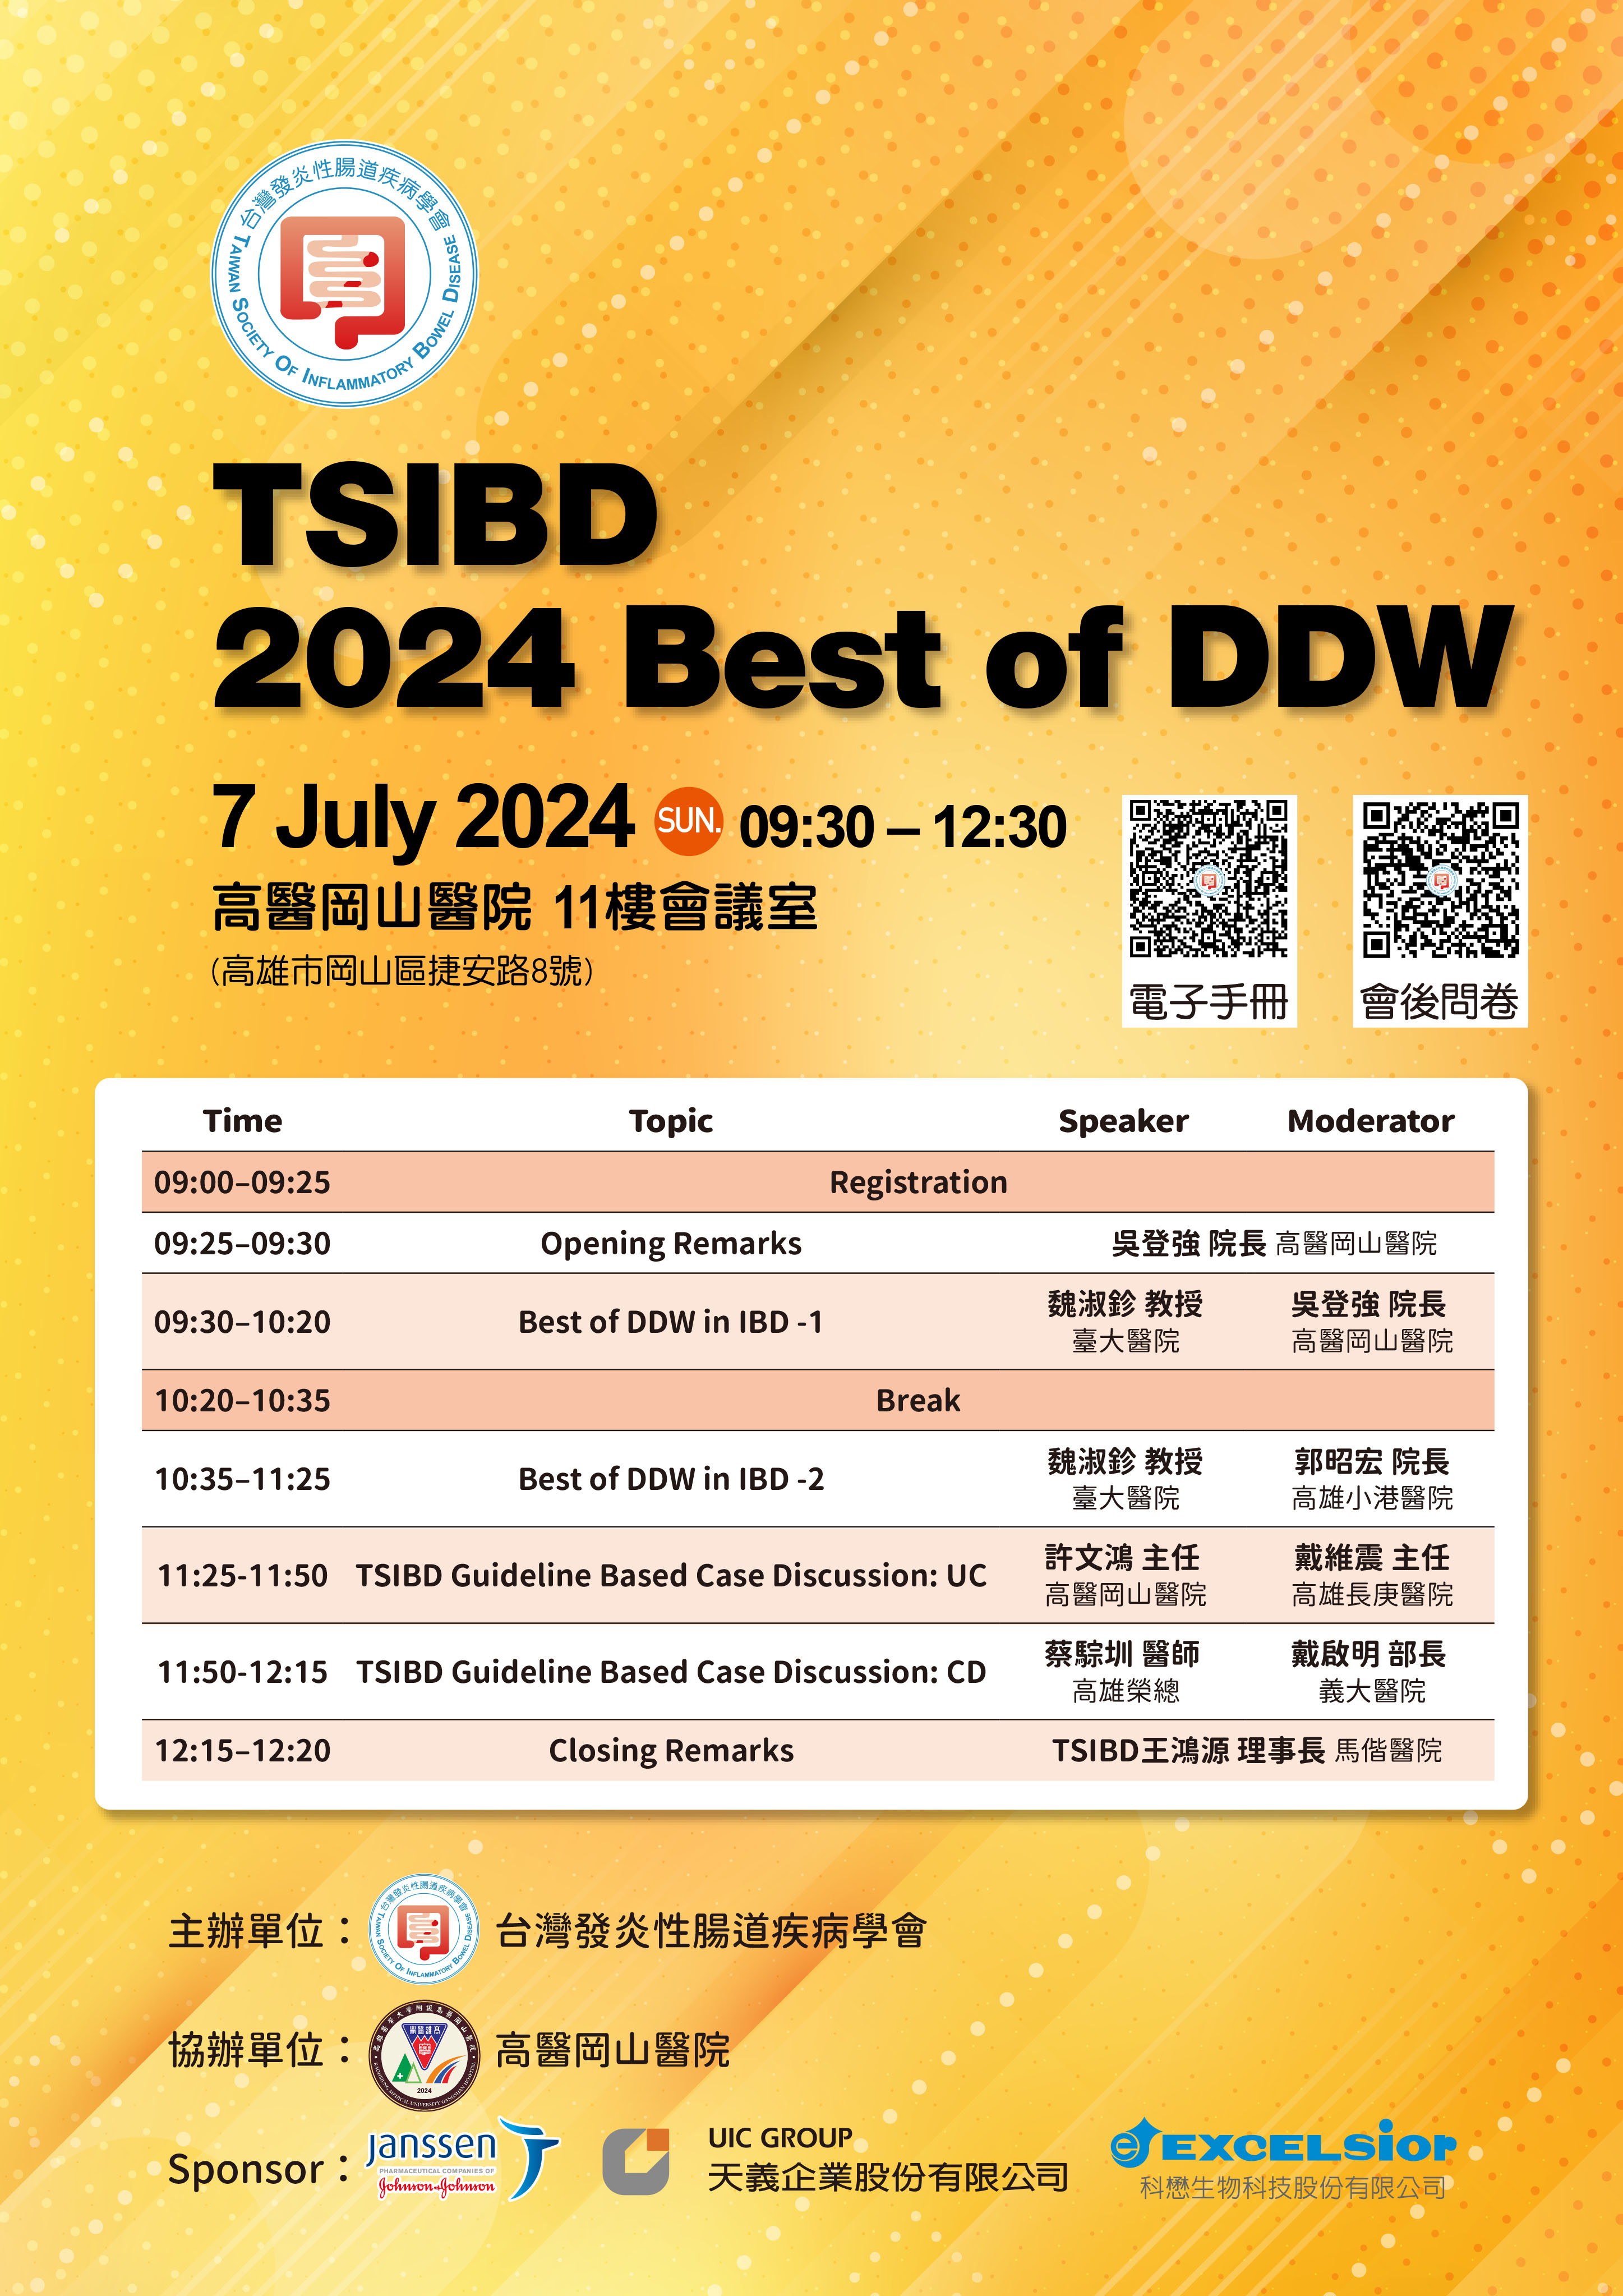 【活動】TSIBD 2024 Best of DDW (高雄場)~活動結束